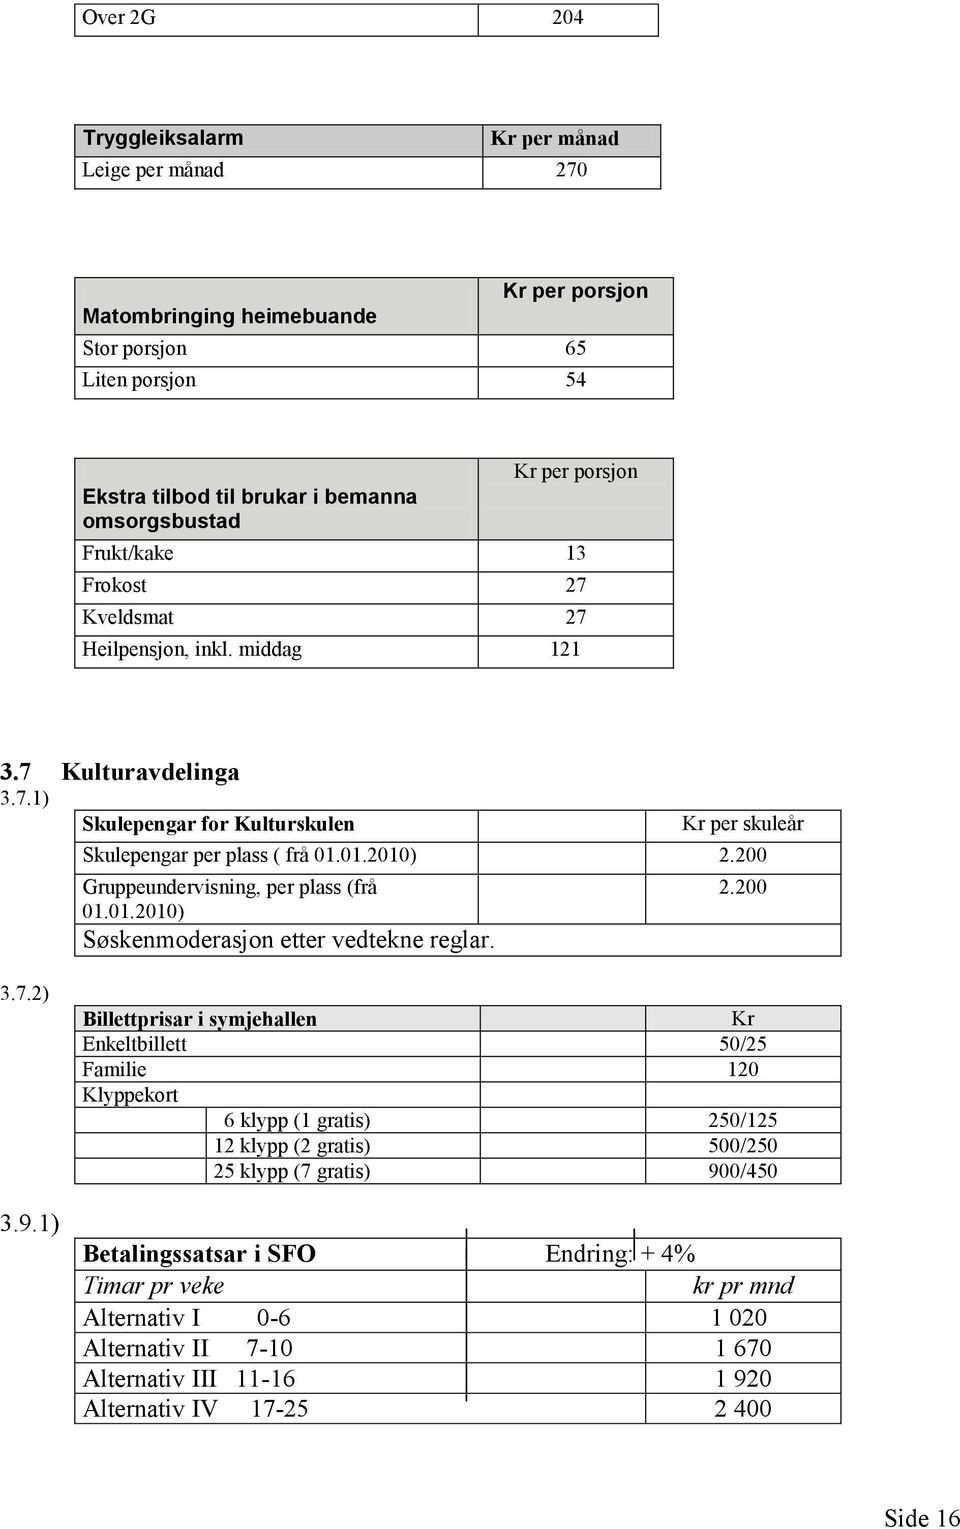 200 Gruppeundervisning, per plass (frå 01.01.2010) Søskenmoderasjon etter vedtekne reglar. 2.200 3.7.2) 3.9.